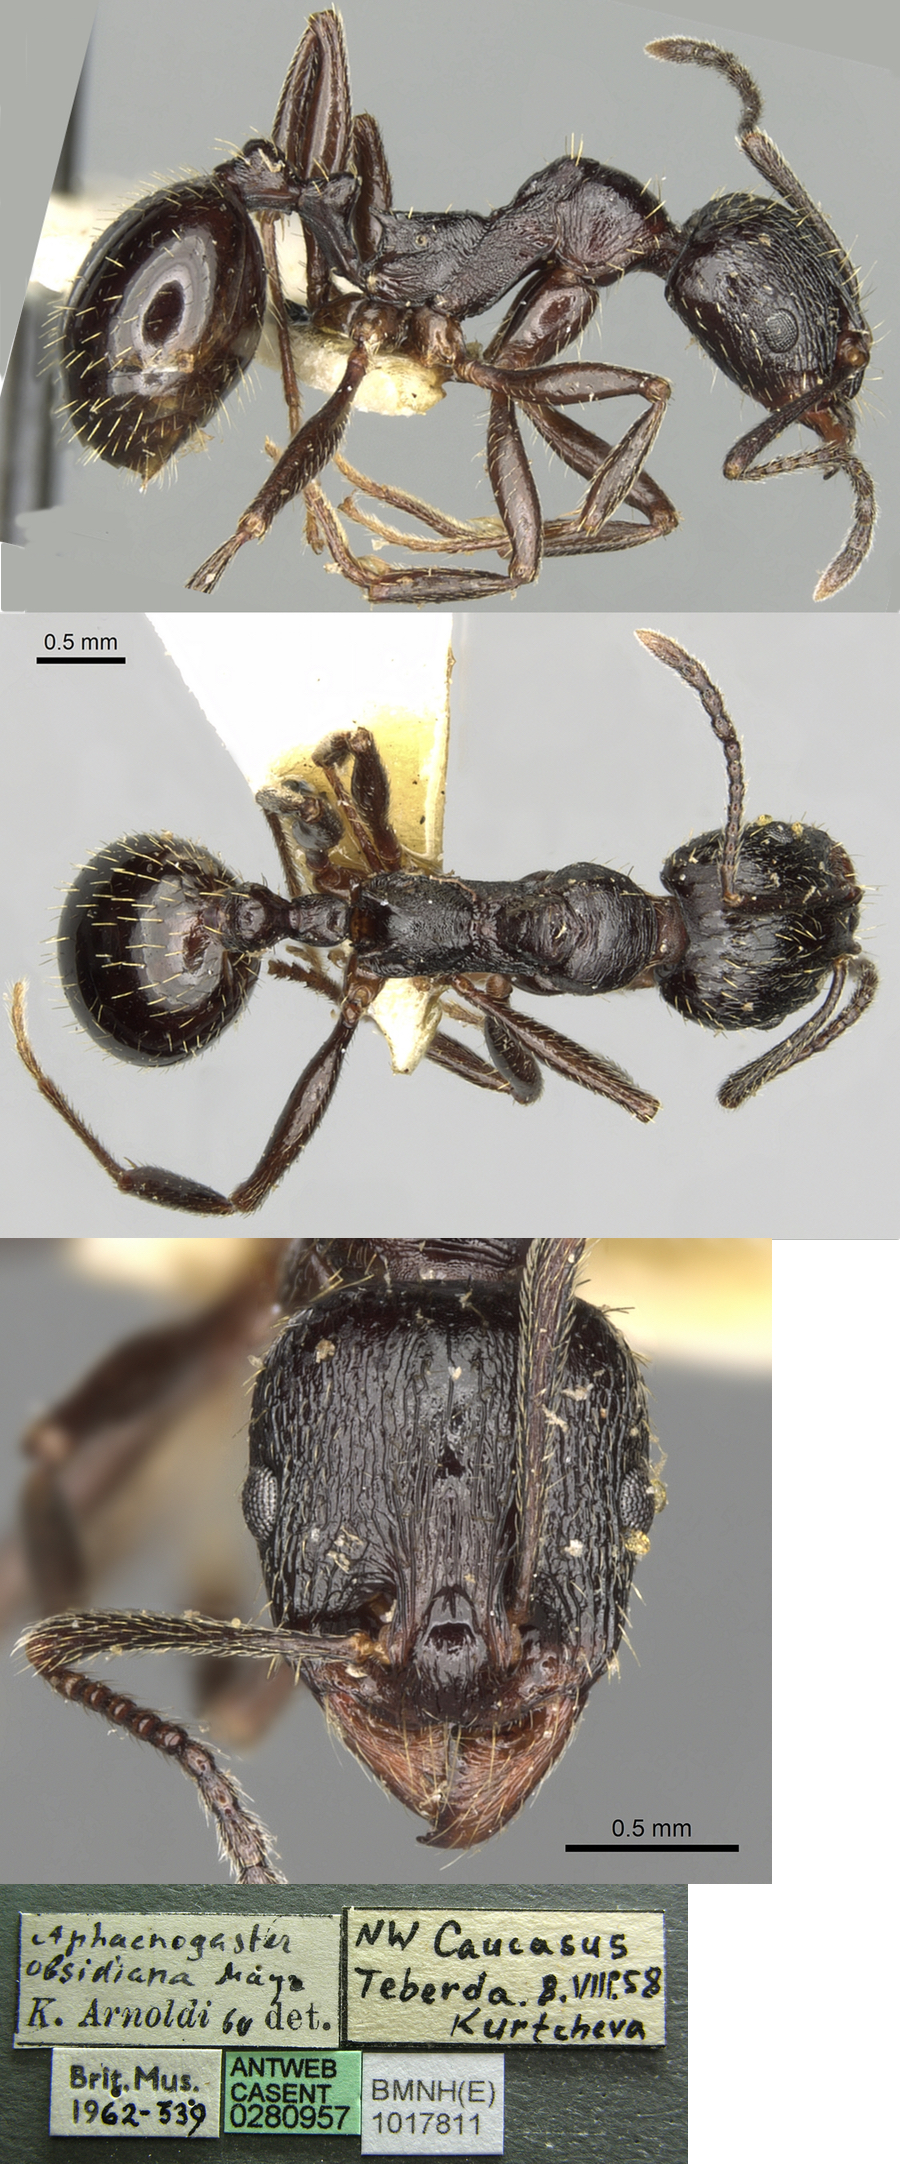 Aphaenogaster obsidiana